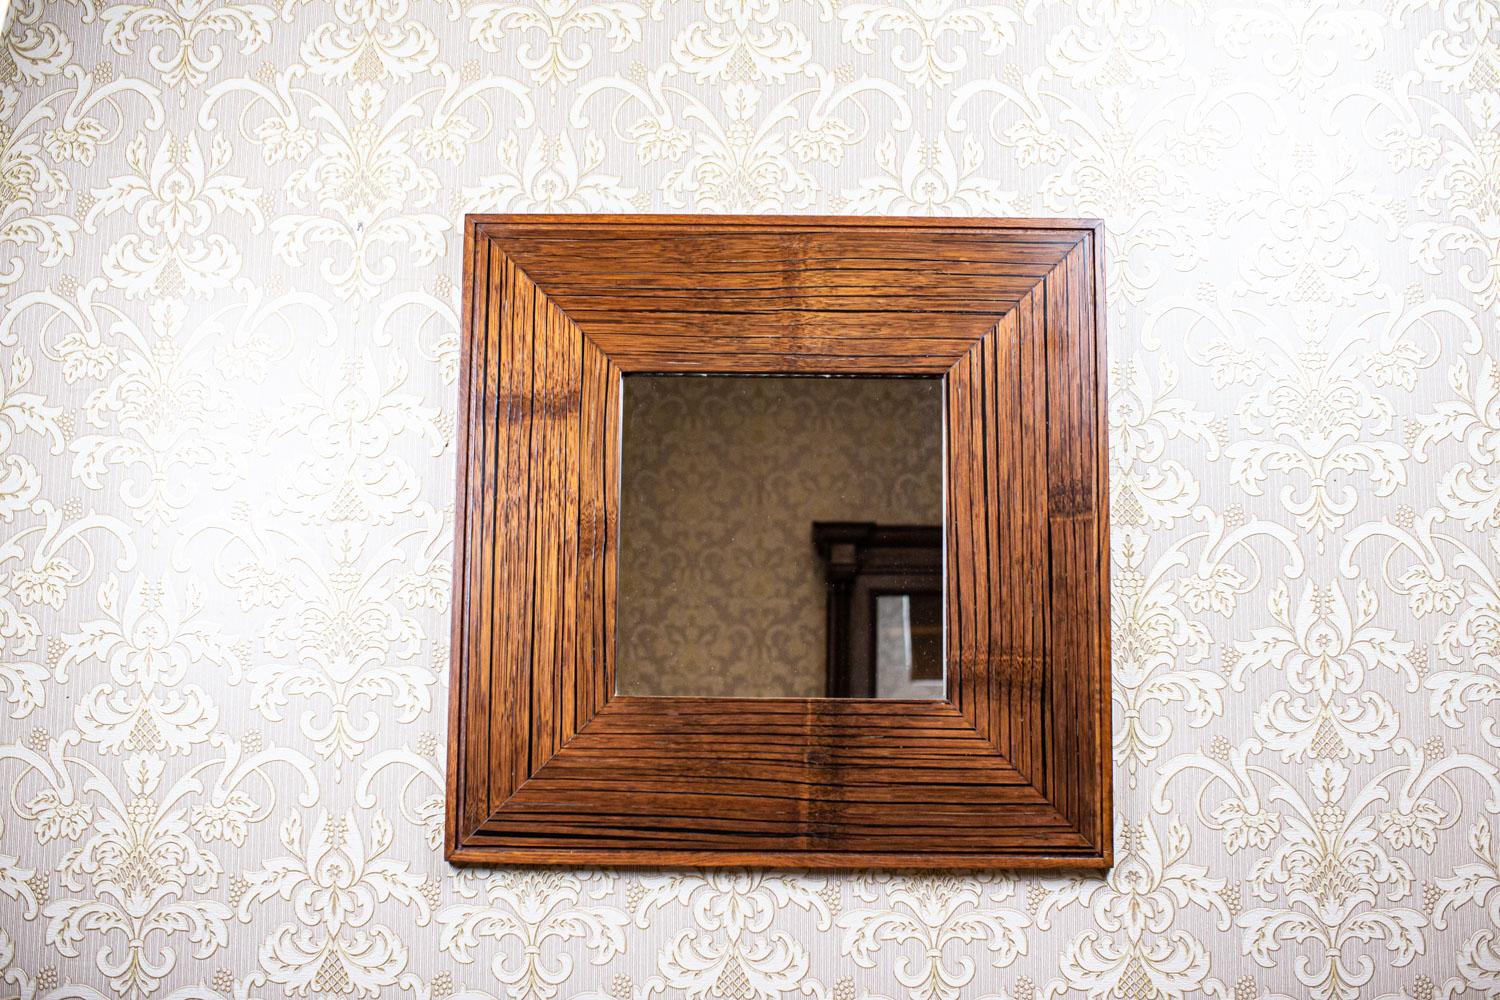 Spiegel aus dem 20. Jahrhundert in originalem quadratischen Rahmen aus exotischem Holz

Wir präsentieren Ihnen einen Spiegel von einfacher Form in einem originellen quadratischen Rahmen.
Der Rahmen ist aus exotischem Holz gefertigt - seine Herkunft